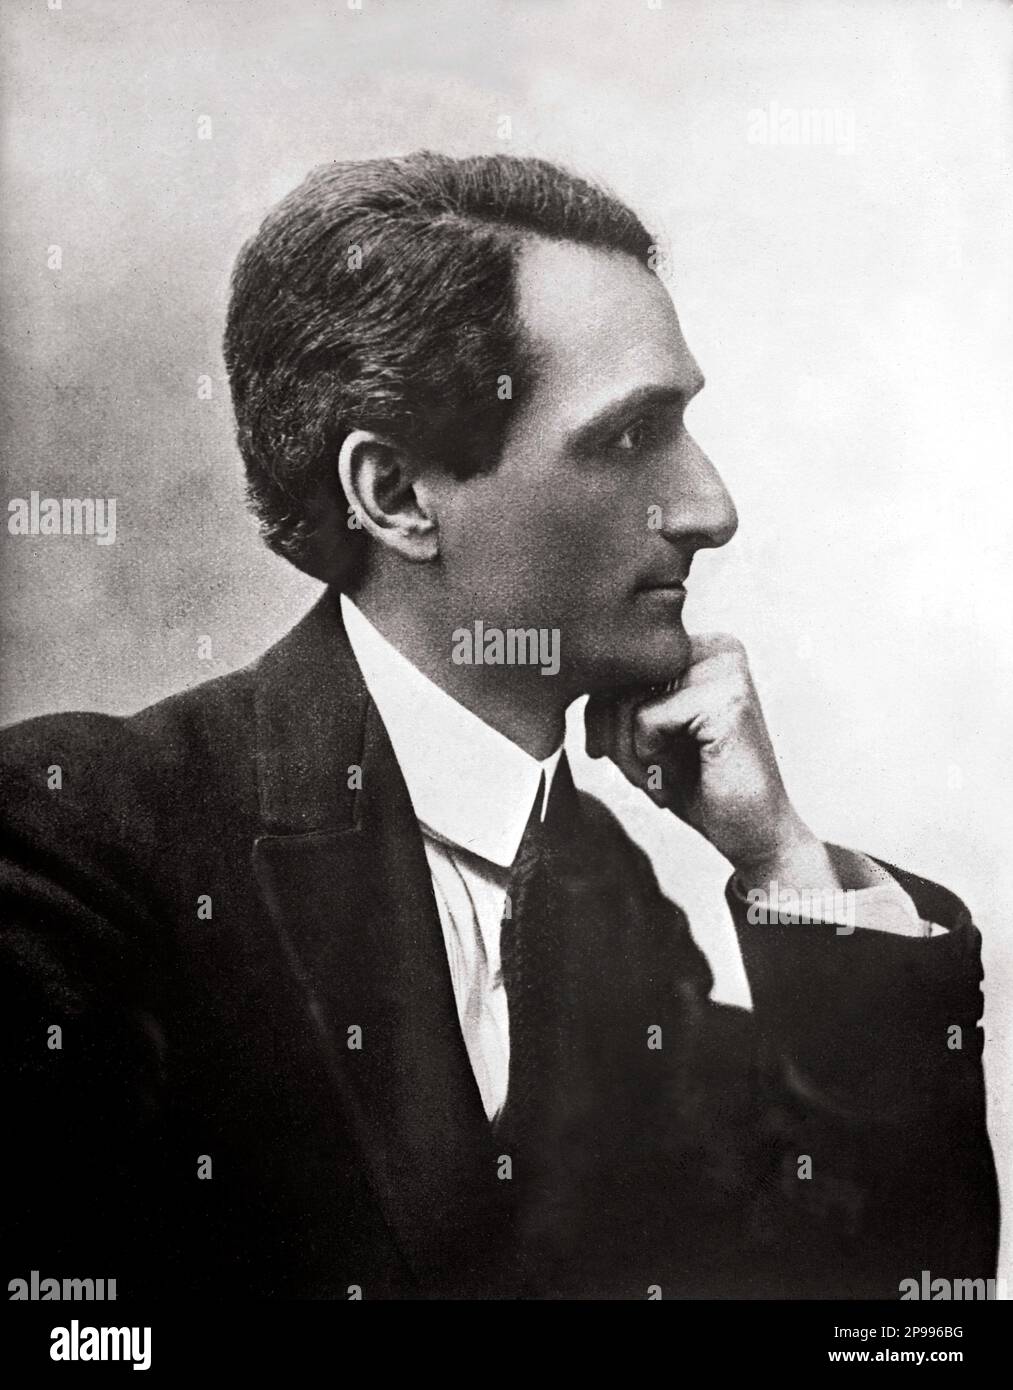 1914 : il celebre compositore ITALIANO ITALO MONTEMEZZI ( 1875 - 1952 ), ricordato soprattutto per l'AMORE DEI tre RE . Foto di Badodi , Milano - OPERA LIRICA VERISTA - COMPOSITORE - MUSICA - ritratto - ritrato - cravatta - profilo - MUSICA CLASSICA - CLASSICA - OPERA - COMPOSITORE LICO - MUSICA - MUSICA ---- ARCHIVIO GBB Foto Stock